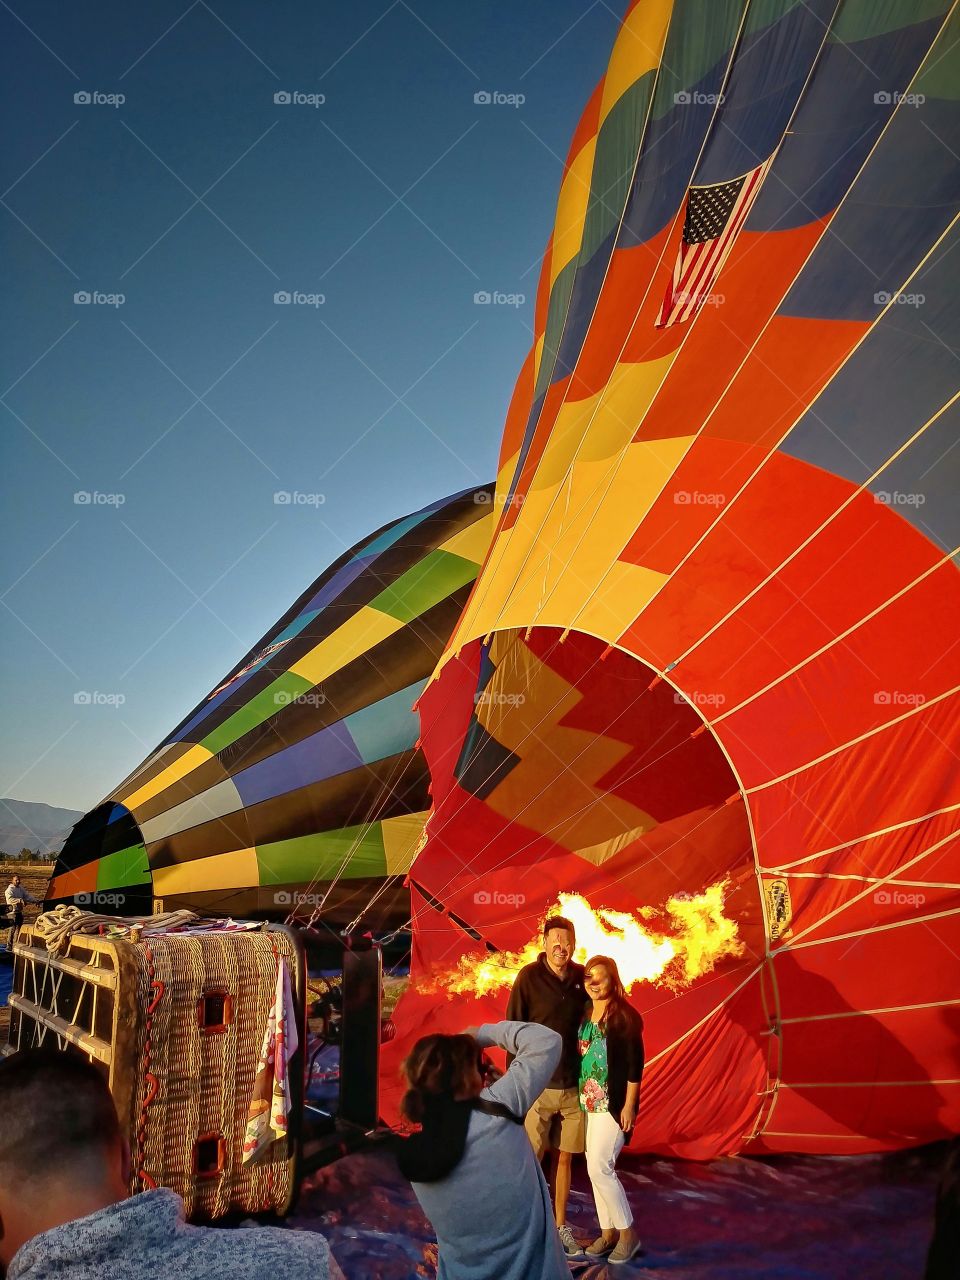 Temecula Balloon Festival